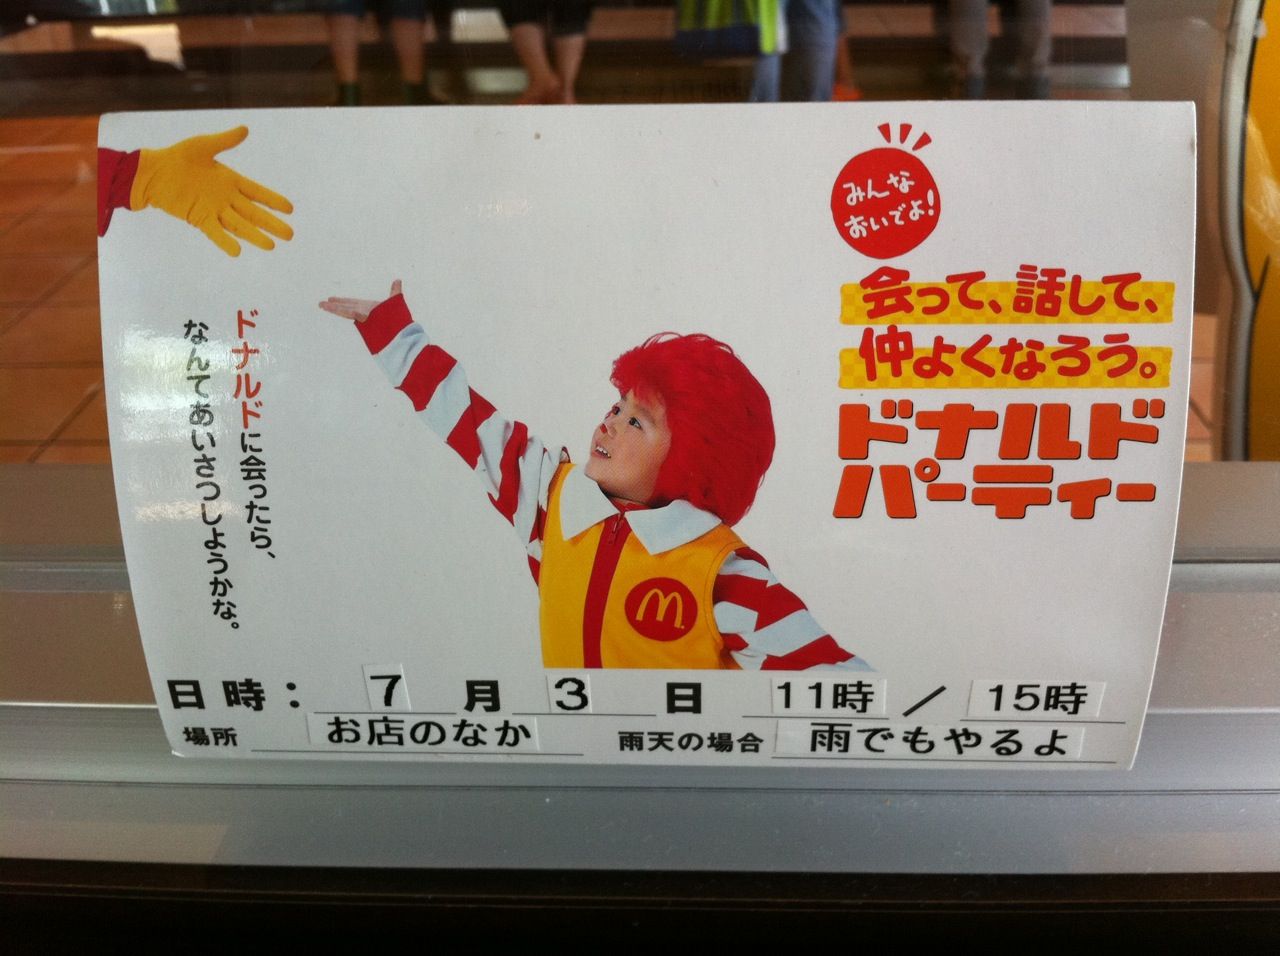 マクドナルドのドナルドが 明日 戸田市役所南通りのマクドナルドに来るそうです 戸田市に住むと楽しいな